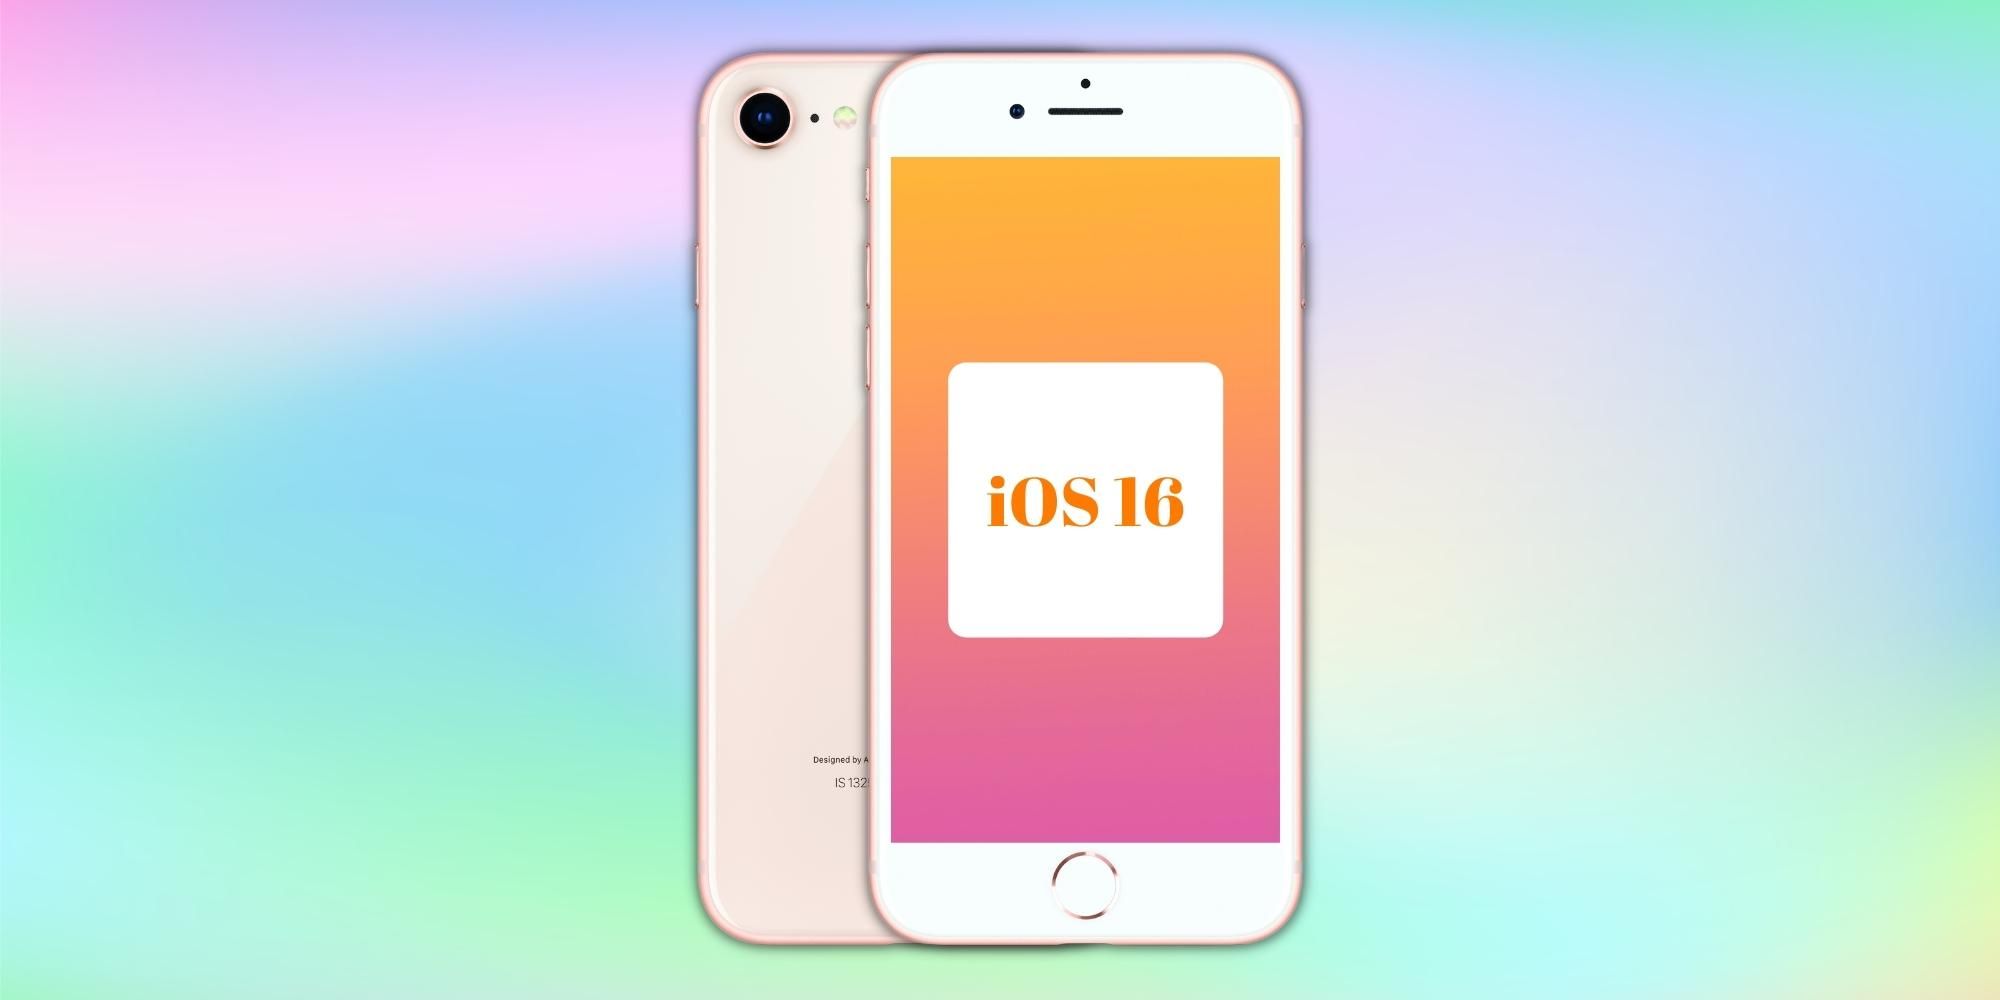 ¿El iPhone 8 y el iPhone 8 Plus obtendrán iOS 16?